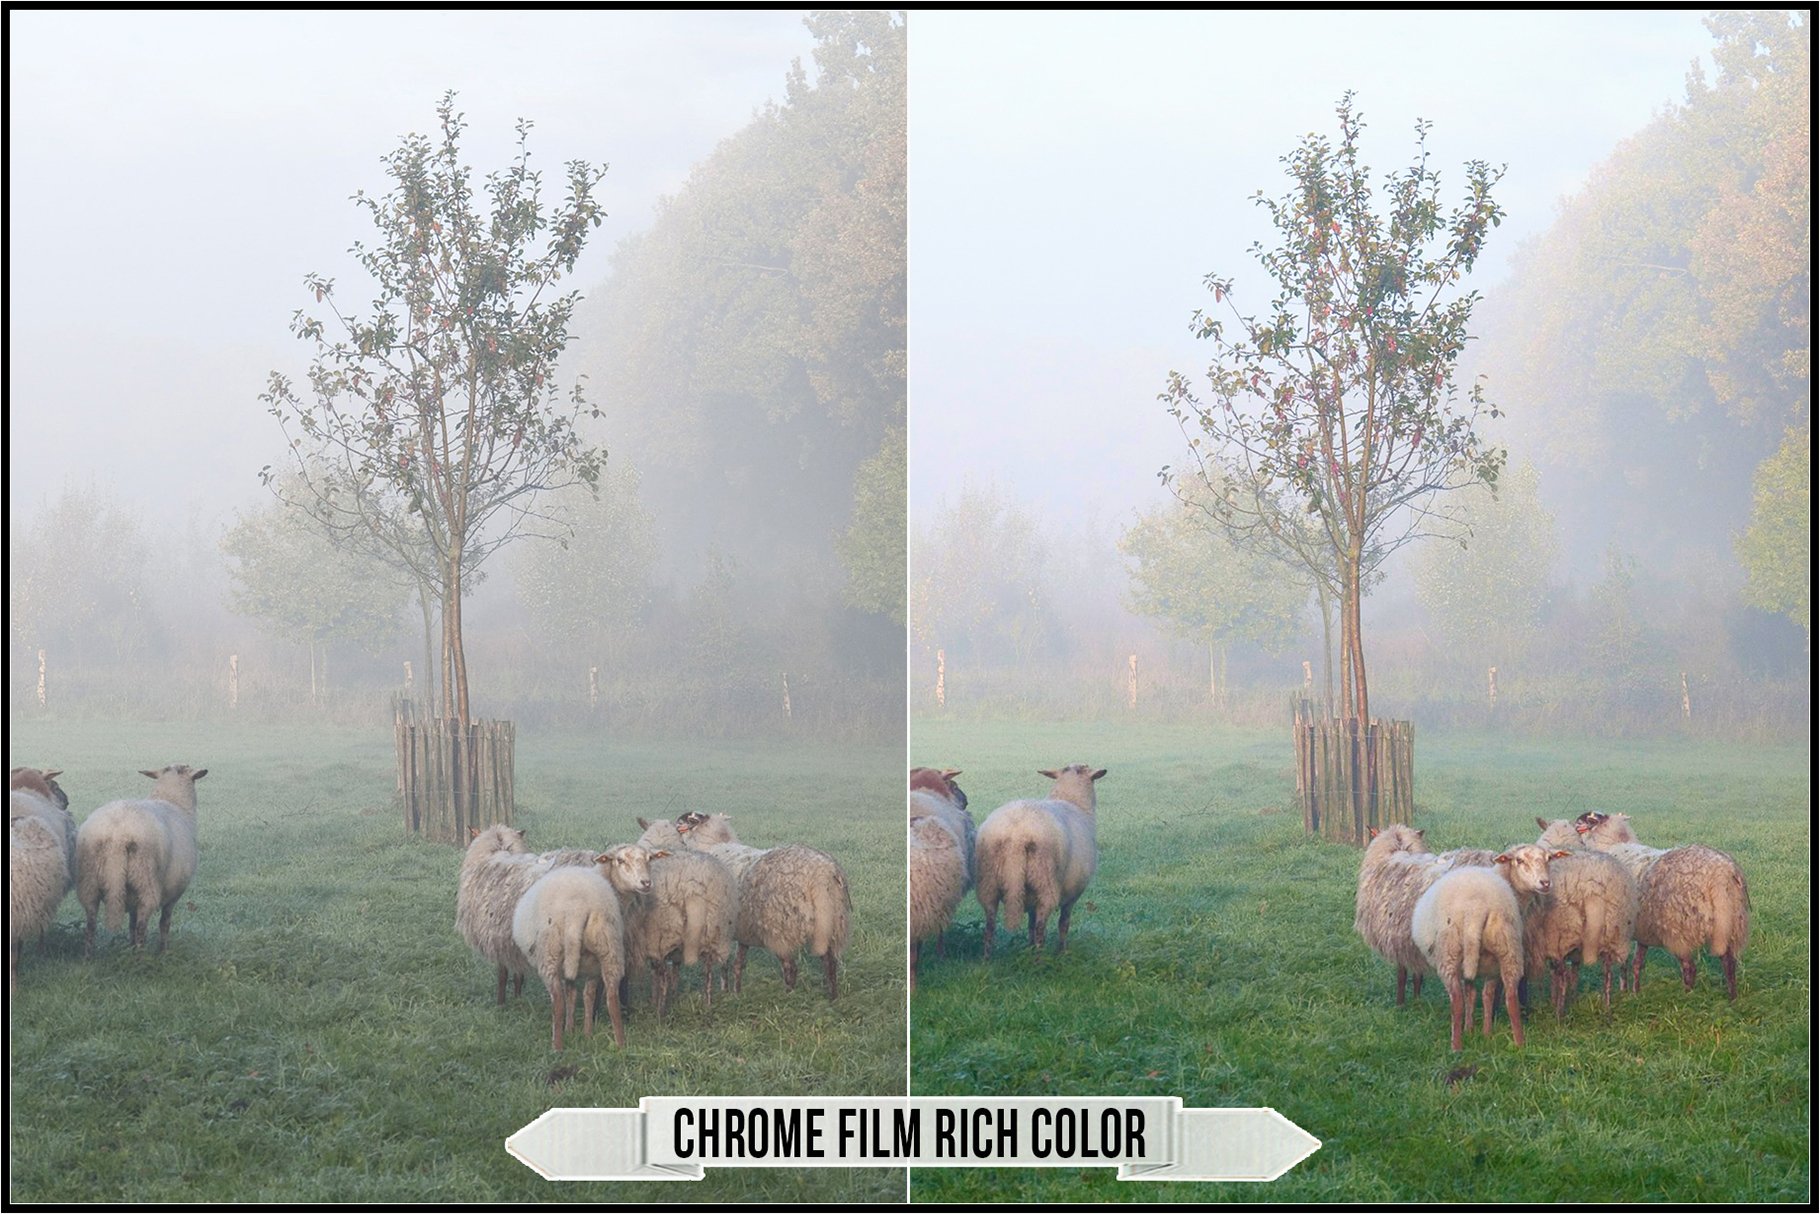 chrome film rich color 294